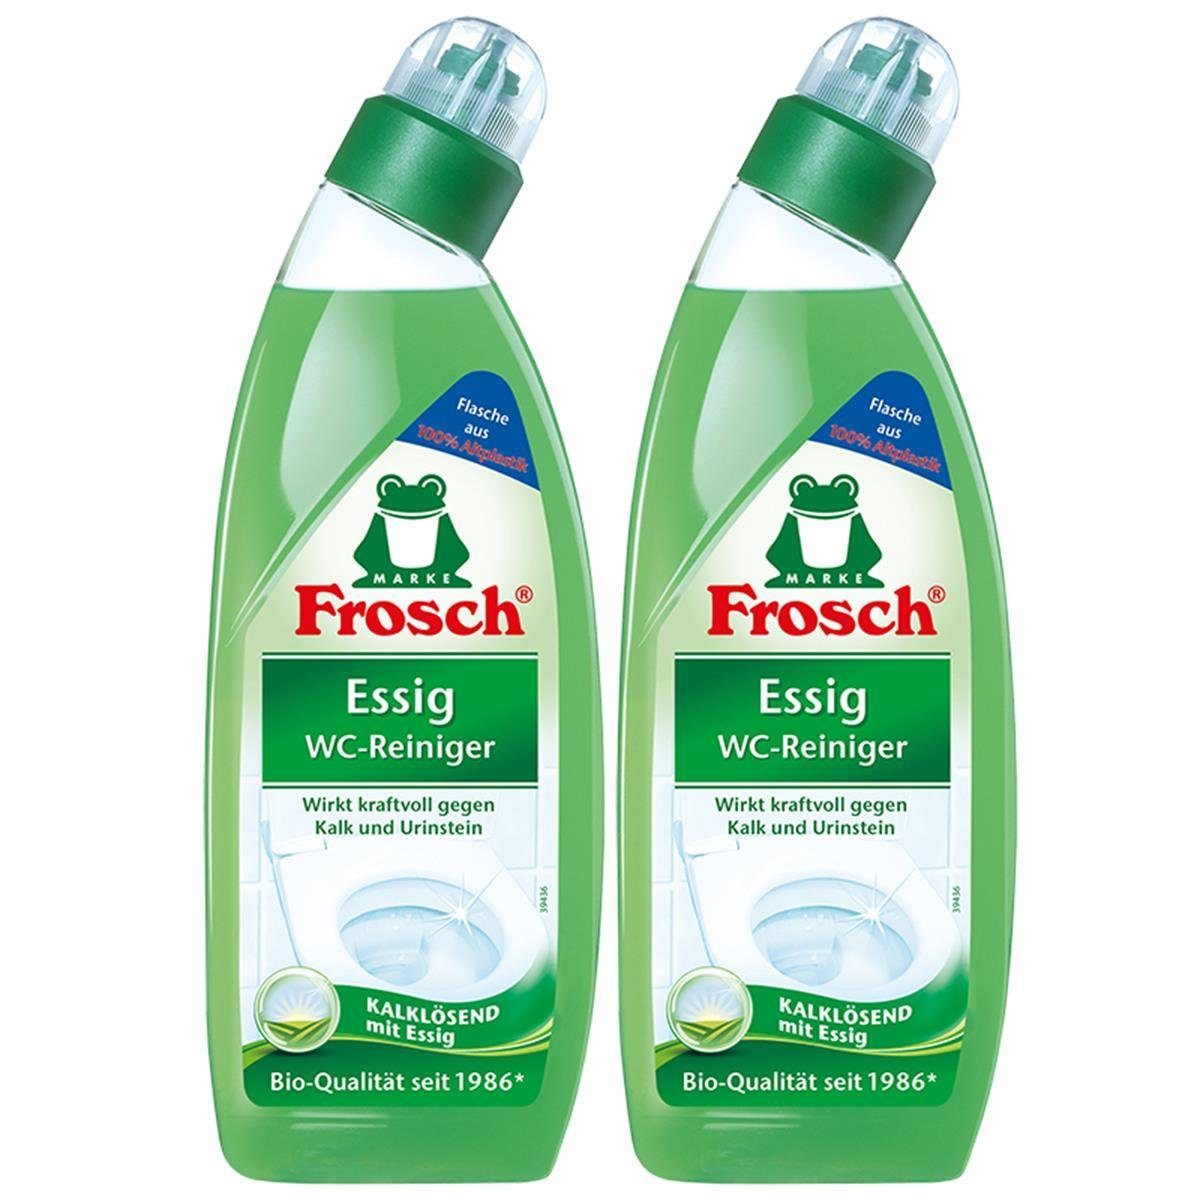 FROSCH 2x Frosch Essig Essig Kalklösend 750 WC-Reiniger mit - WC-Reiniger ml